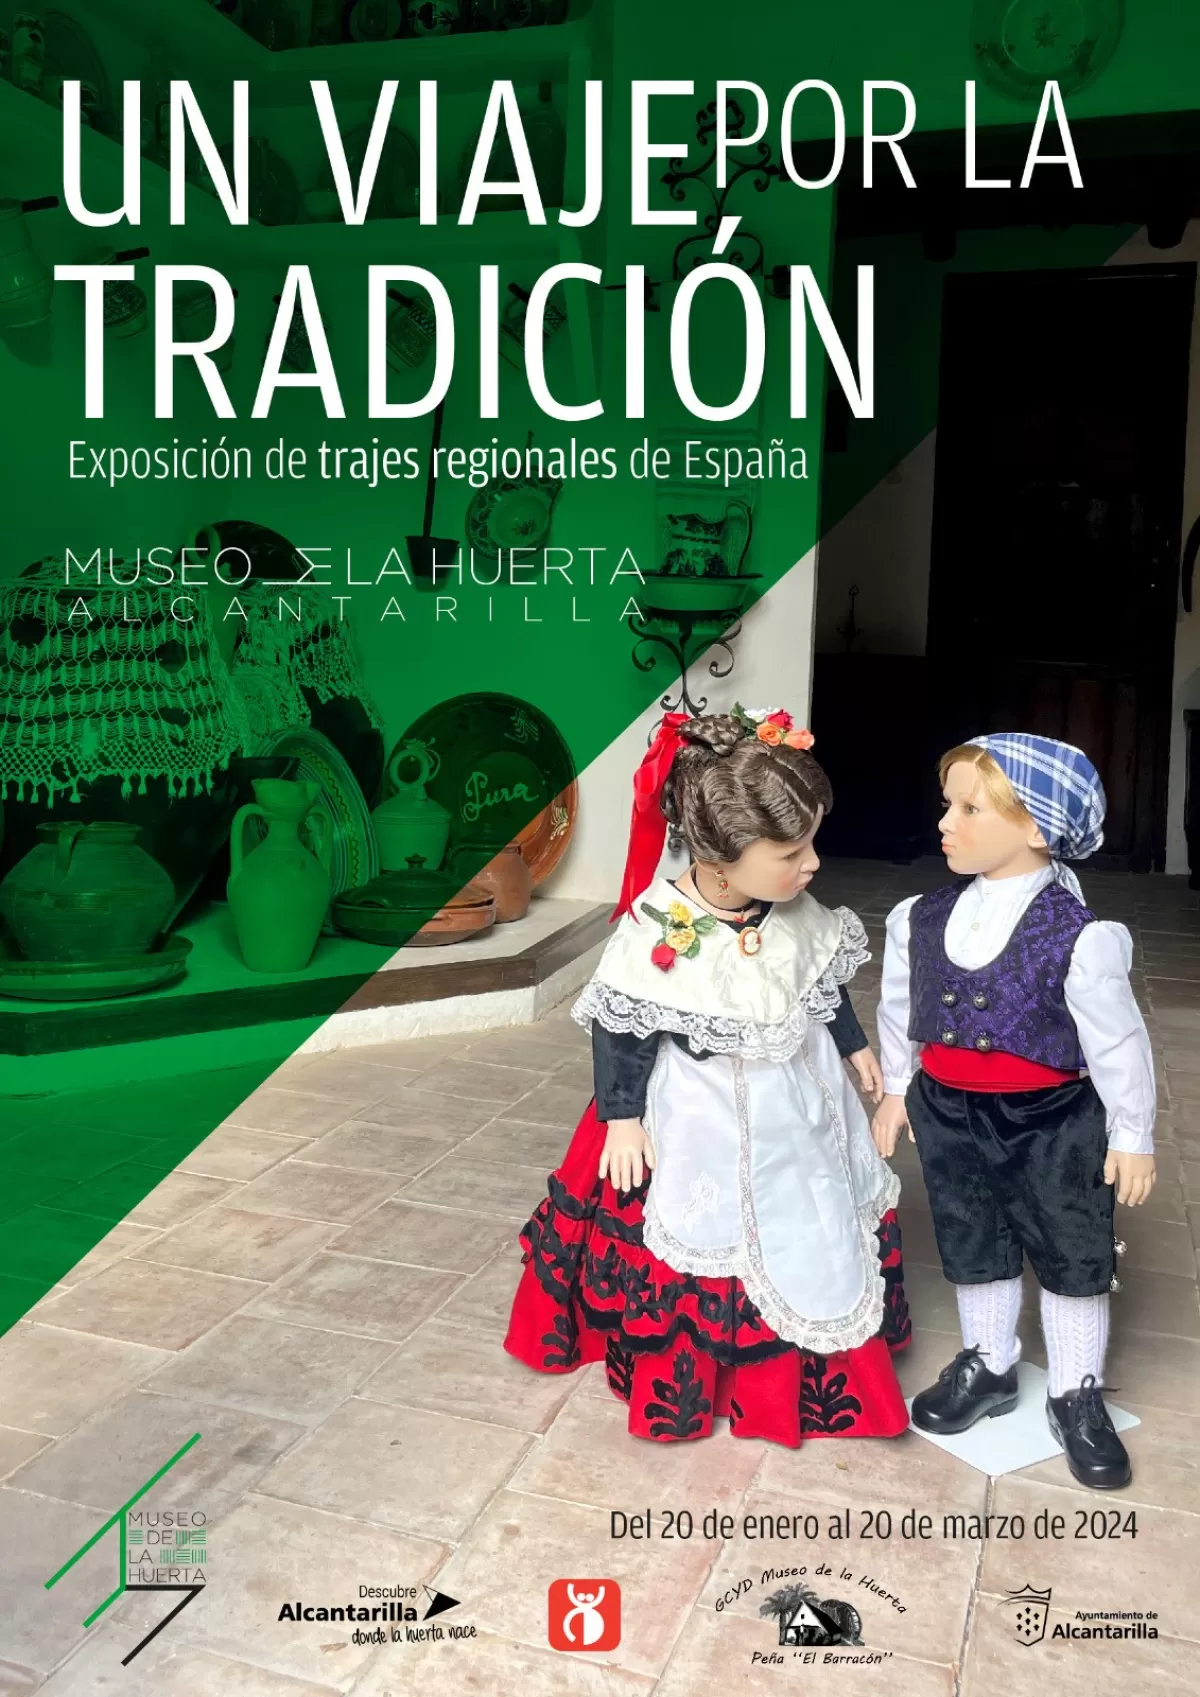 El Museo de la Huerta de Alcantarilla expone una muestra de trajes regionales de España